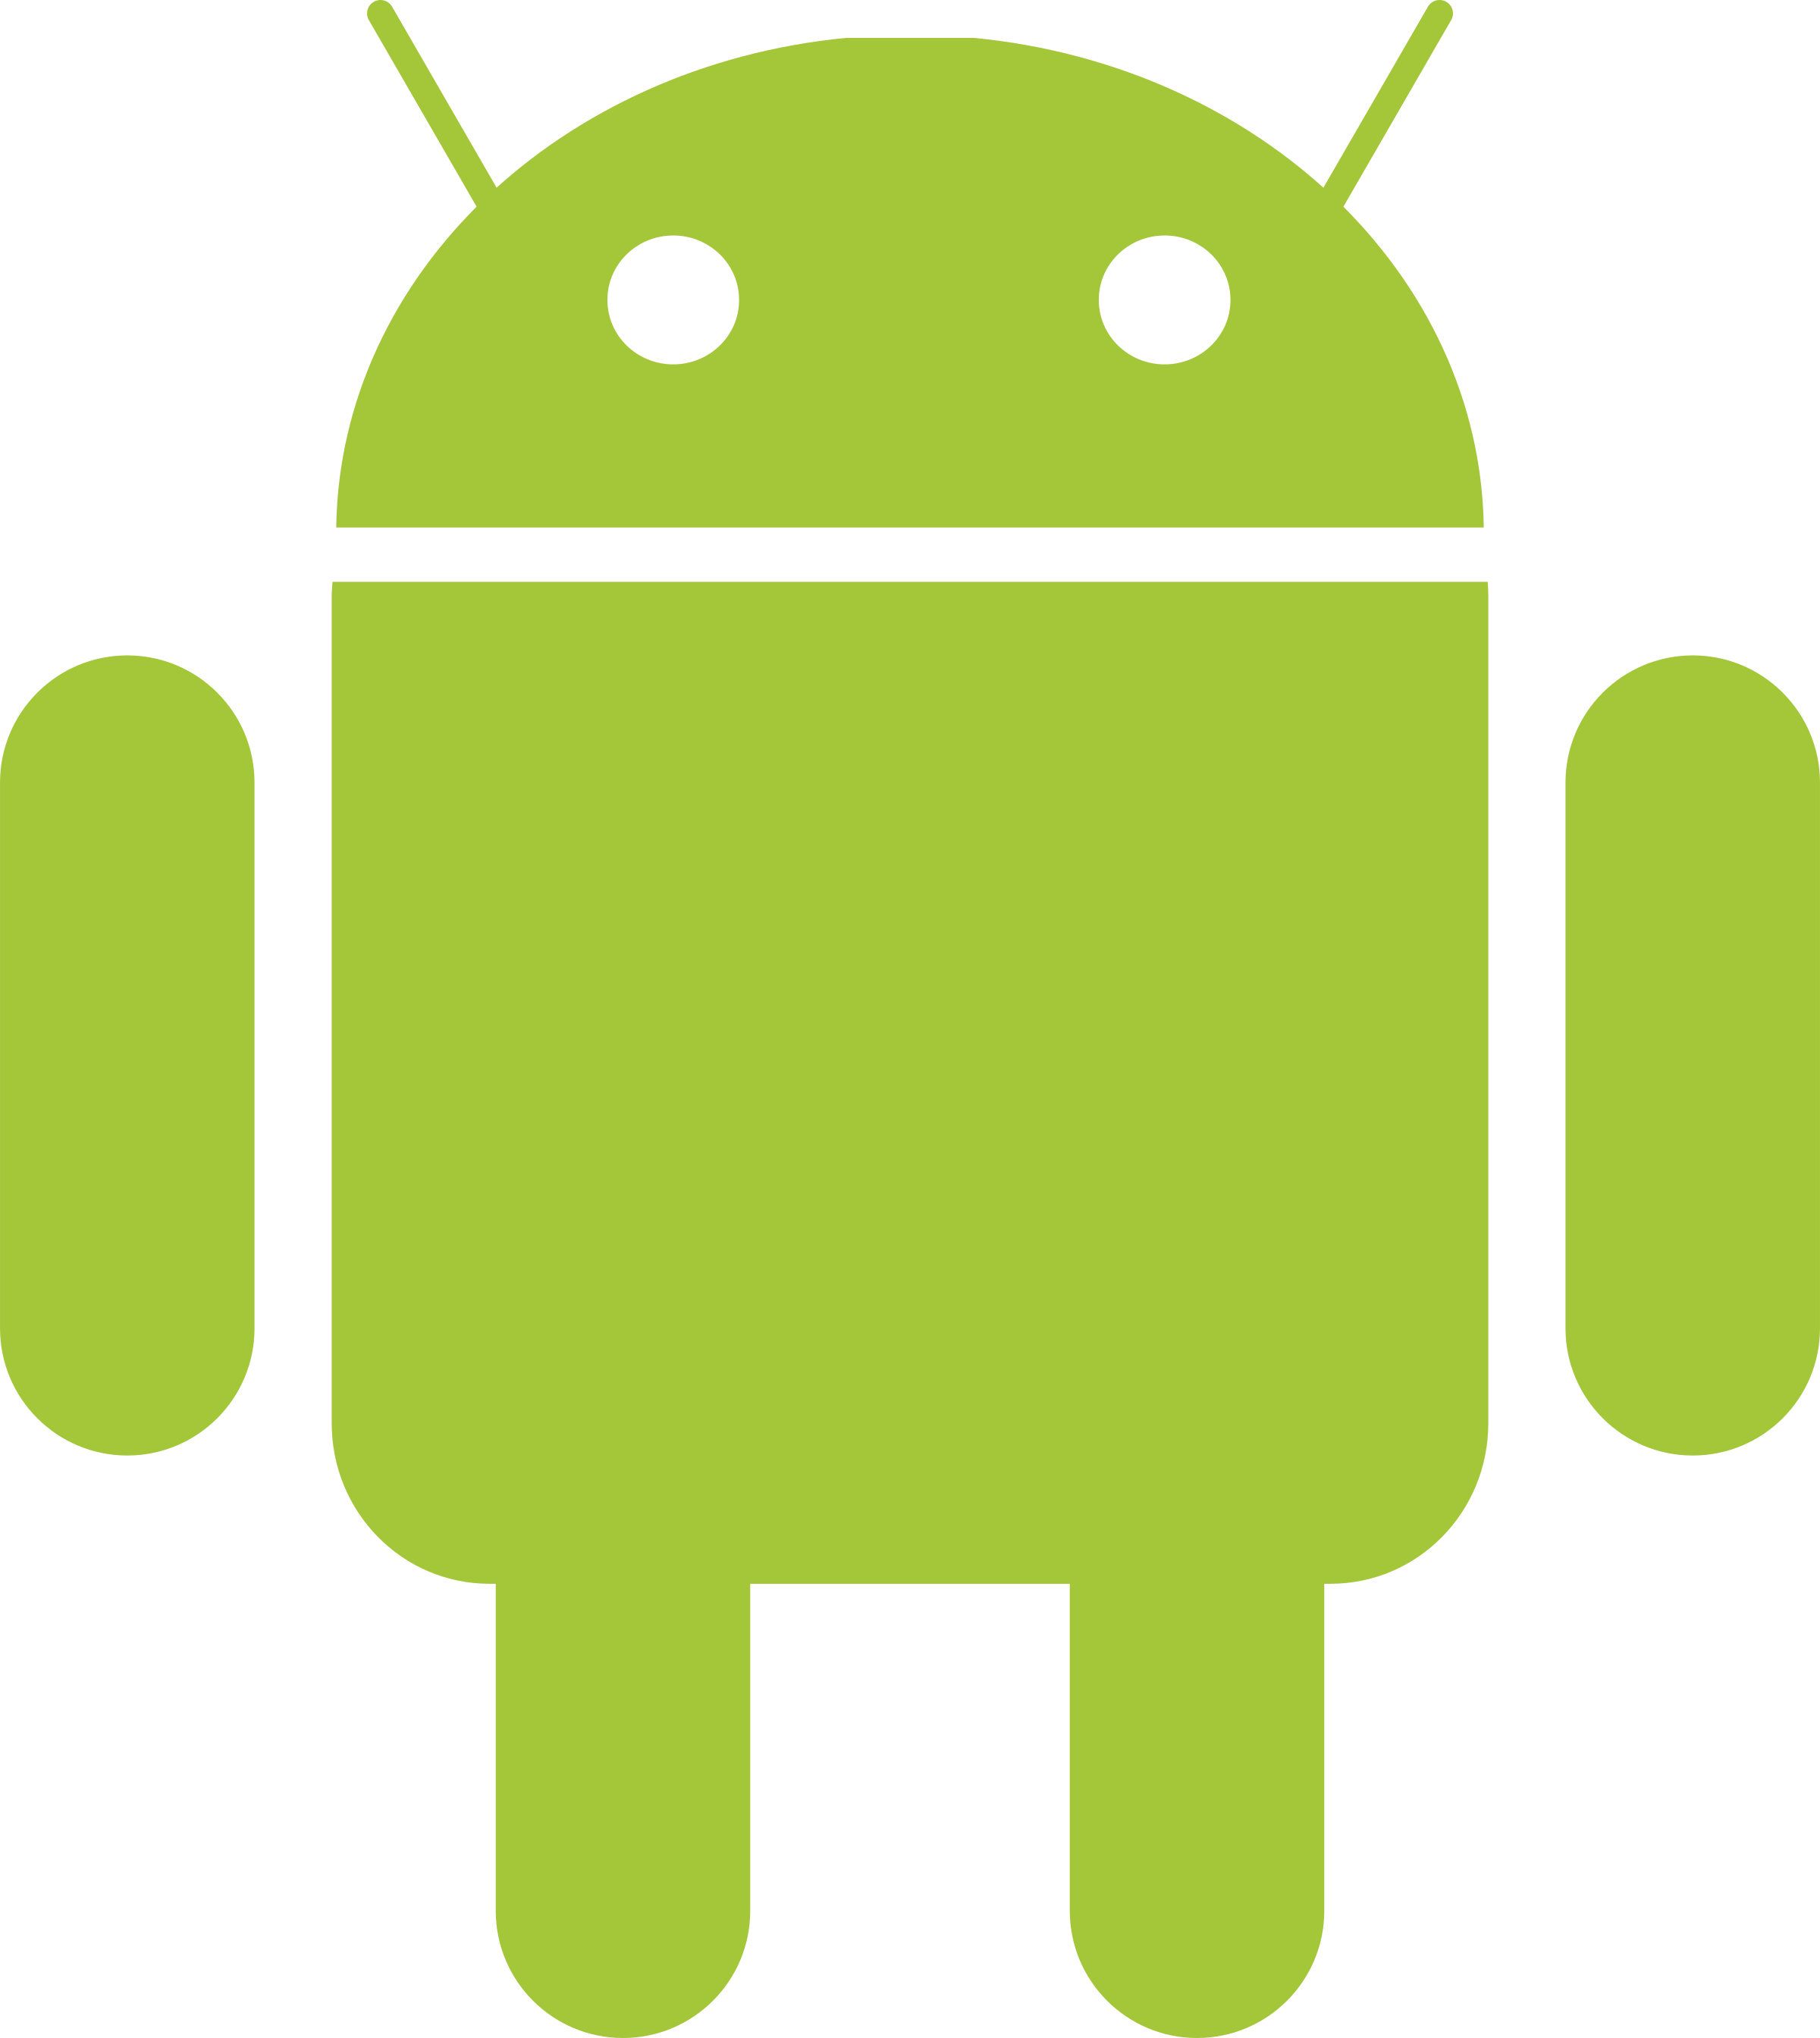 android-logo-png-transparent ⋆ Altyra - Desenvolvimento de Software